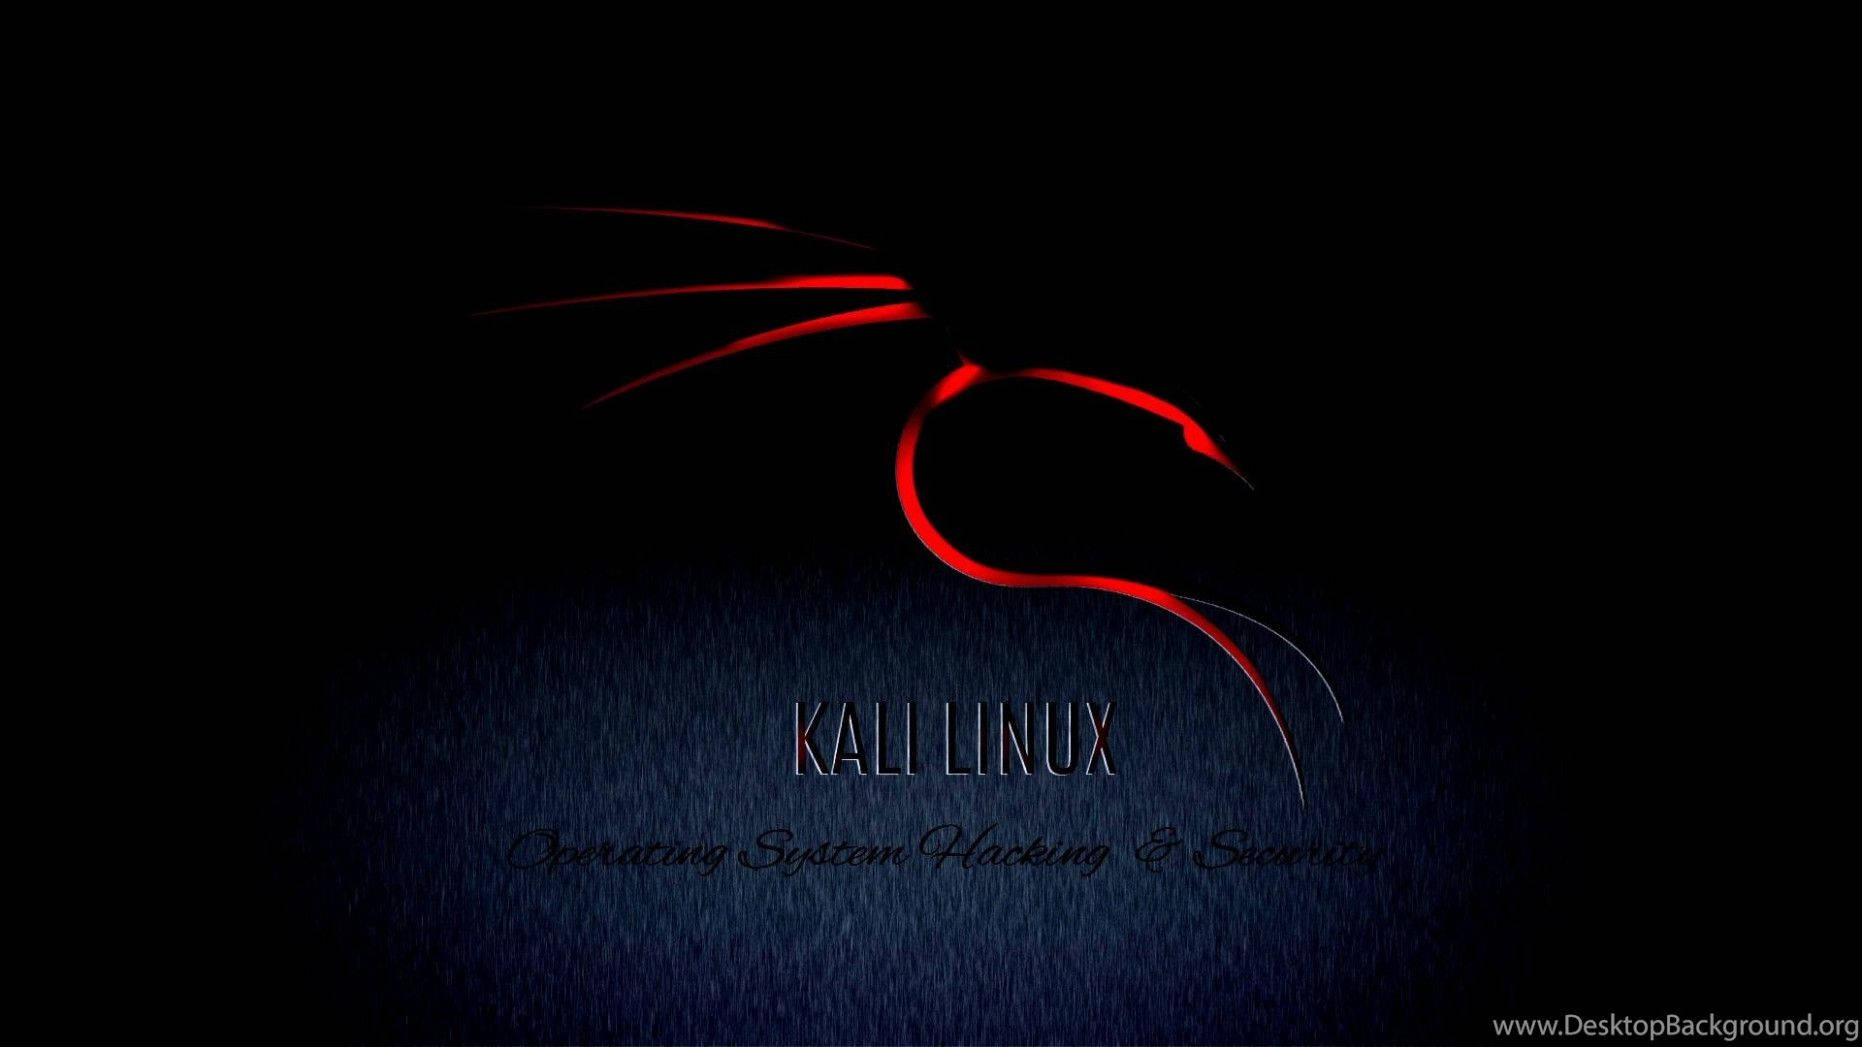 Kali Linux Blazing Dragon Wallpaper